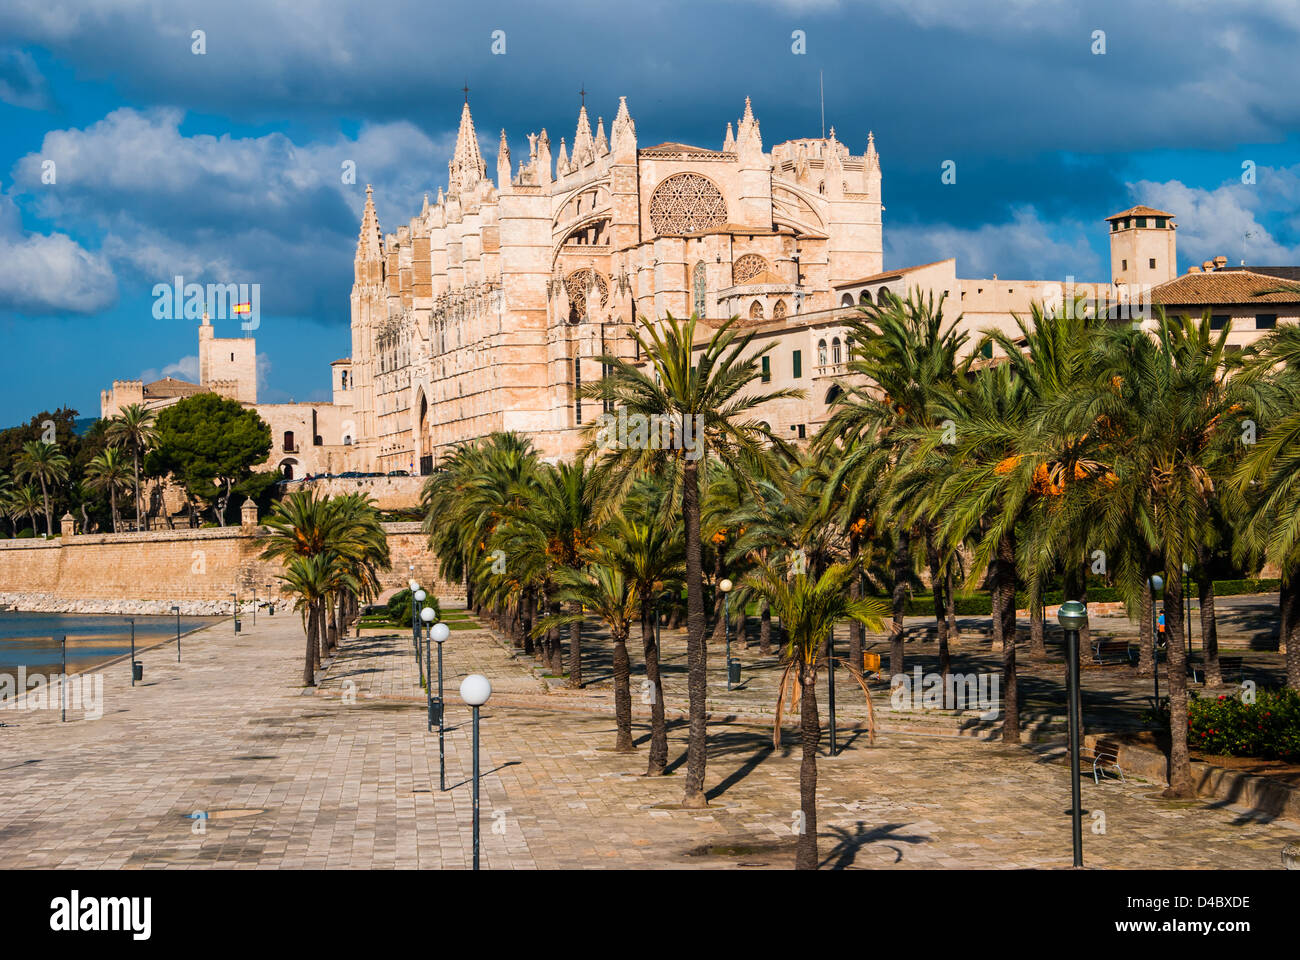 Palma, Mallorca, Spanien: Die Kathedrale von Santa Maria von Palma, häufiger als La Seu genannt, ist eine gotische Römisch-katholische Kathedrale Stockfoto